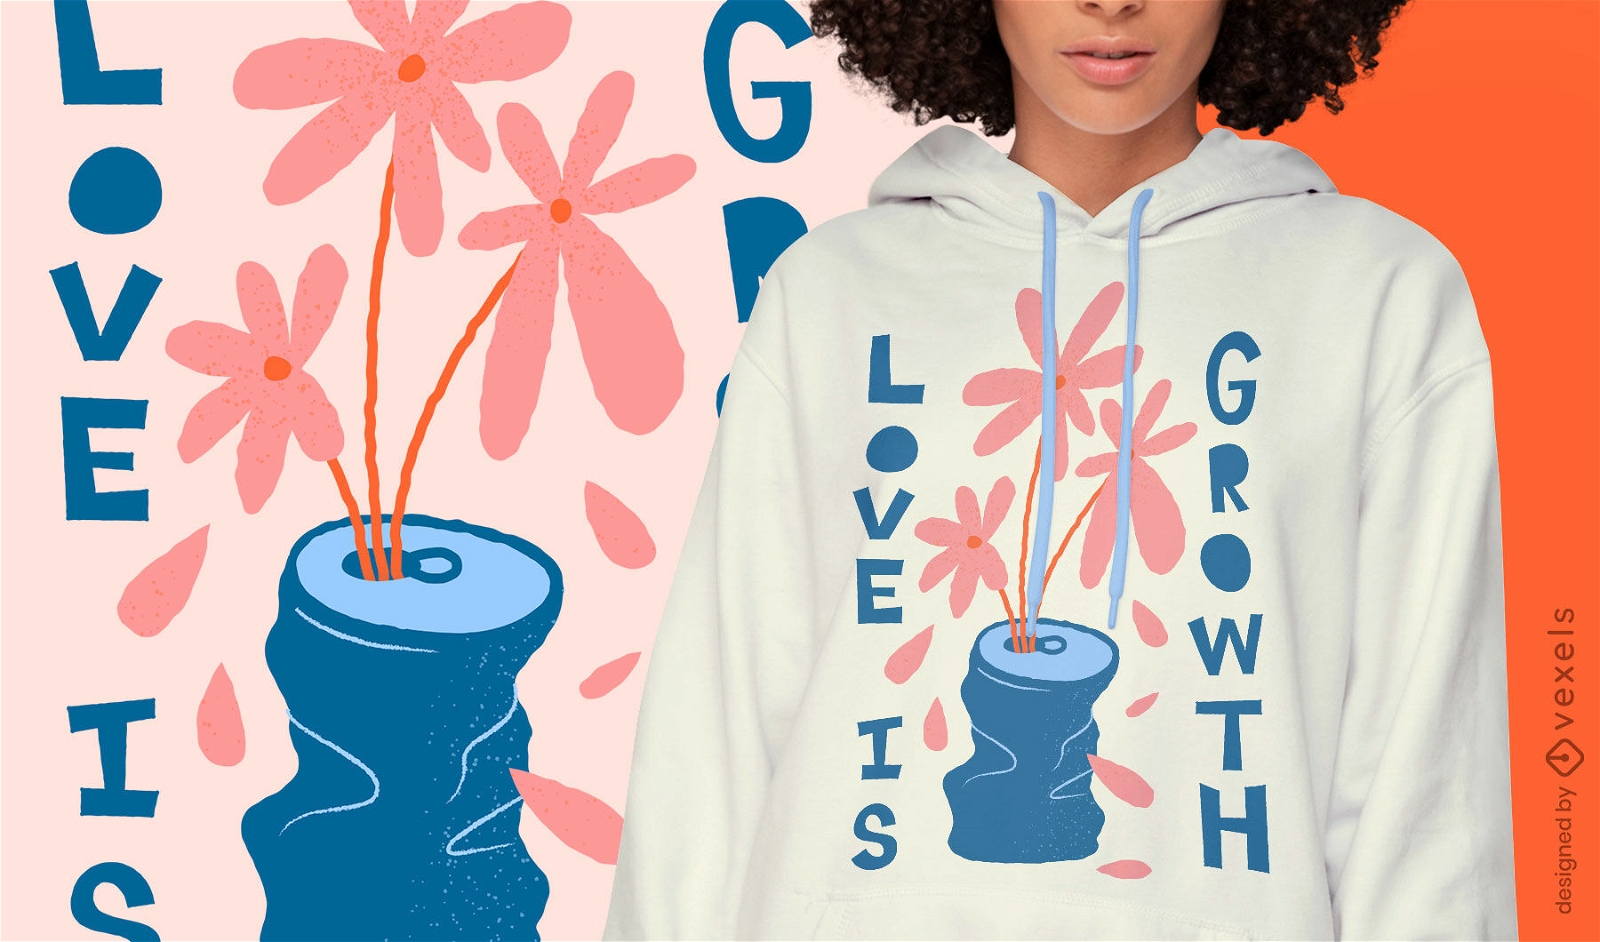 Sch?ne Liebe ist Wachstum Blumenzitat T-Shirt Design